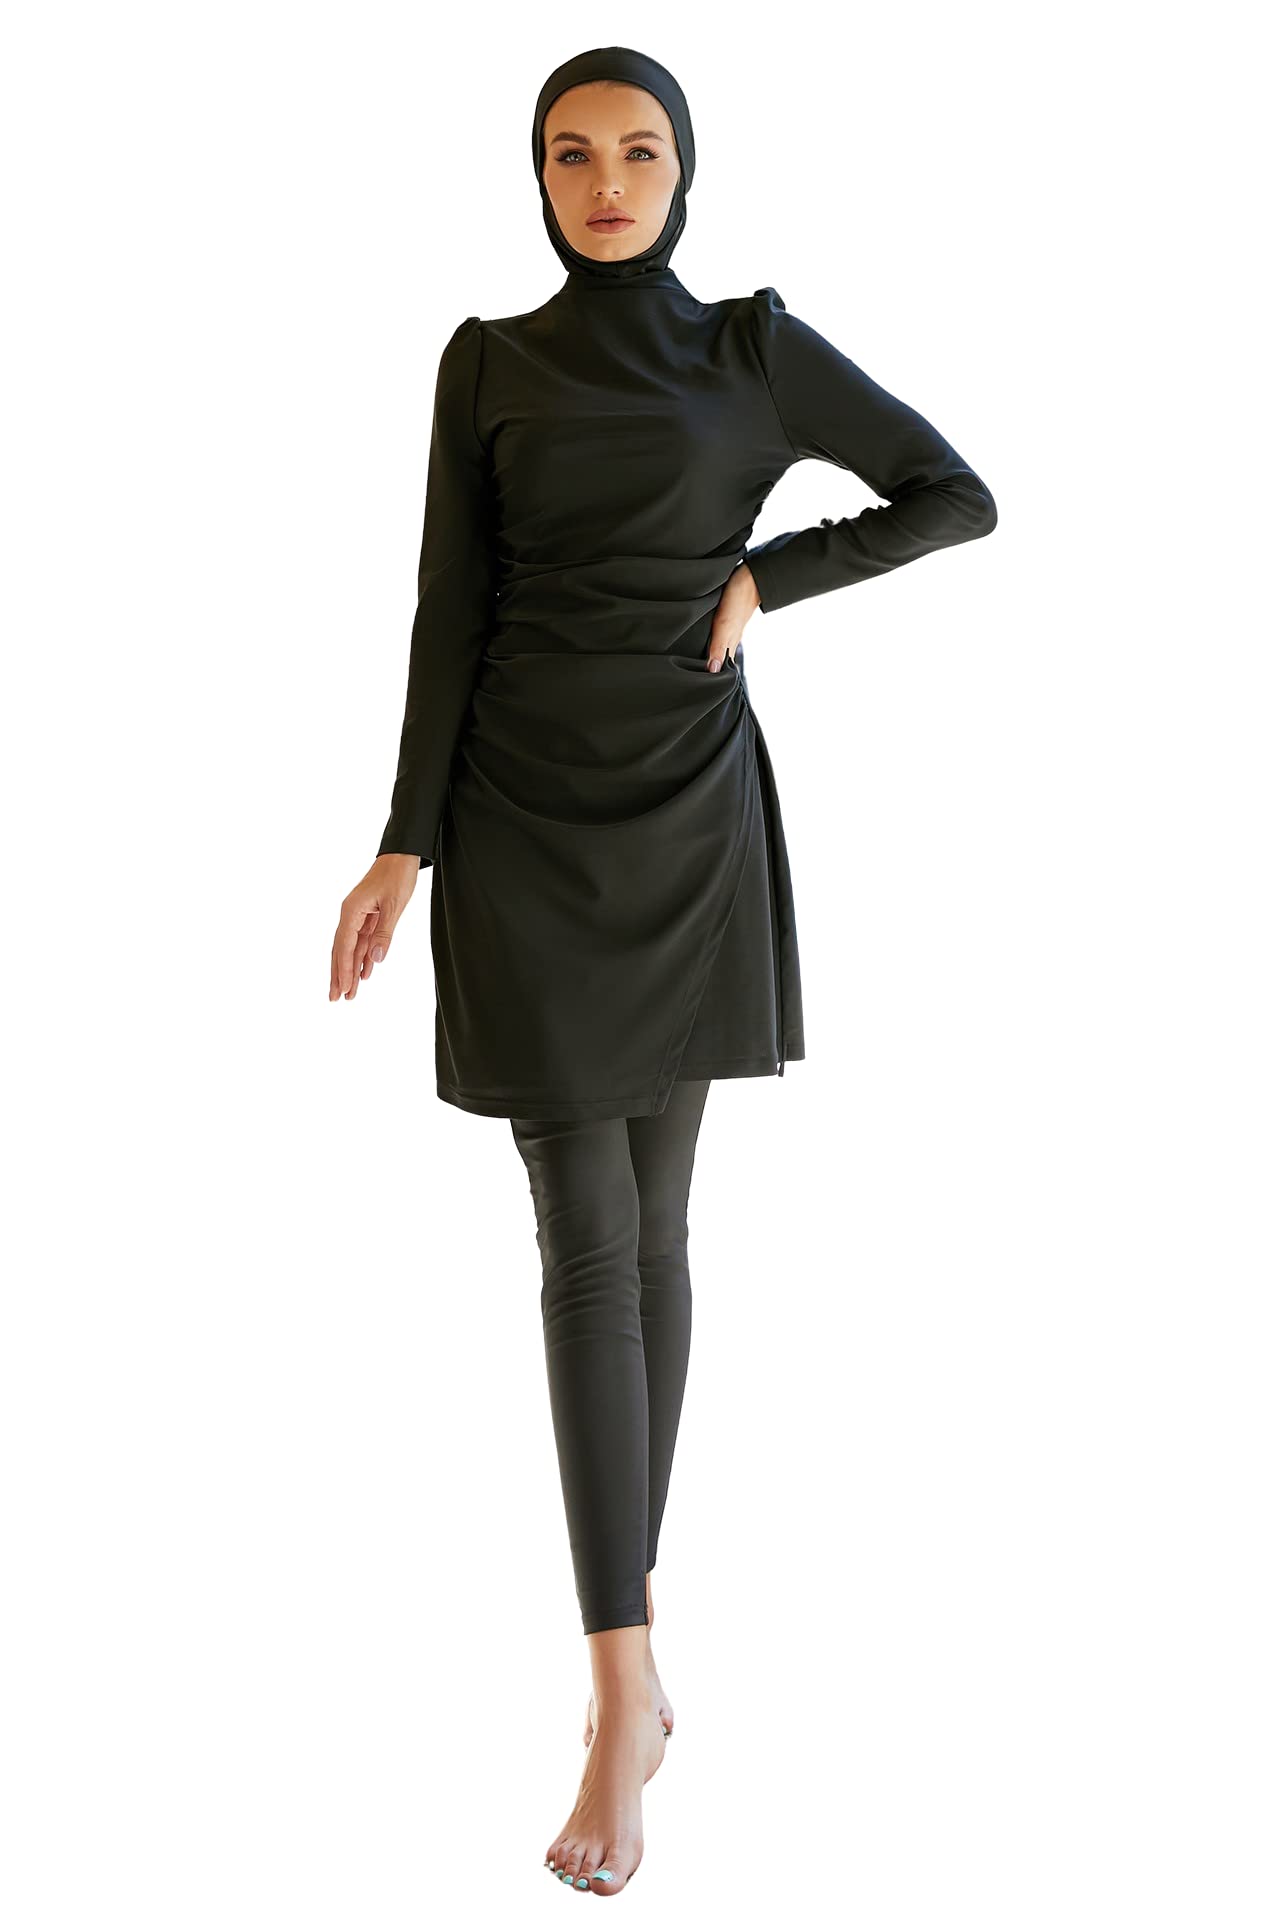 vente chaude Greatfool Burkini Femme Musulmane - Burkini Maillot Islamique Femme 3 pièces avec Couverture Modeste et complète - Hijab de Bain Musulman de Haute qualité avec Protection UV UPF et séchage Rapide MjjT4CXUq stylé 